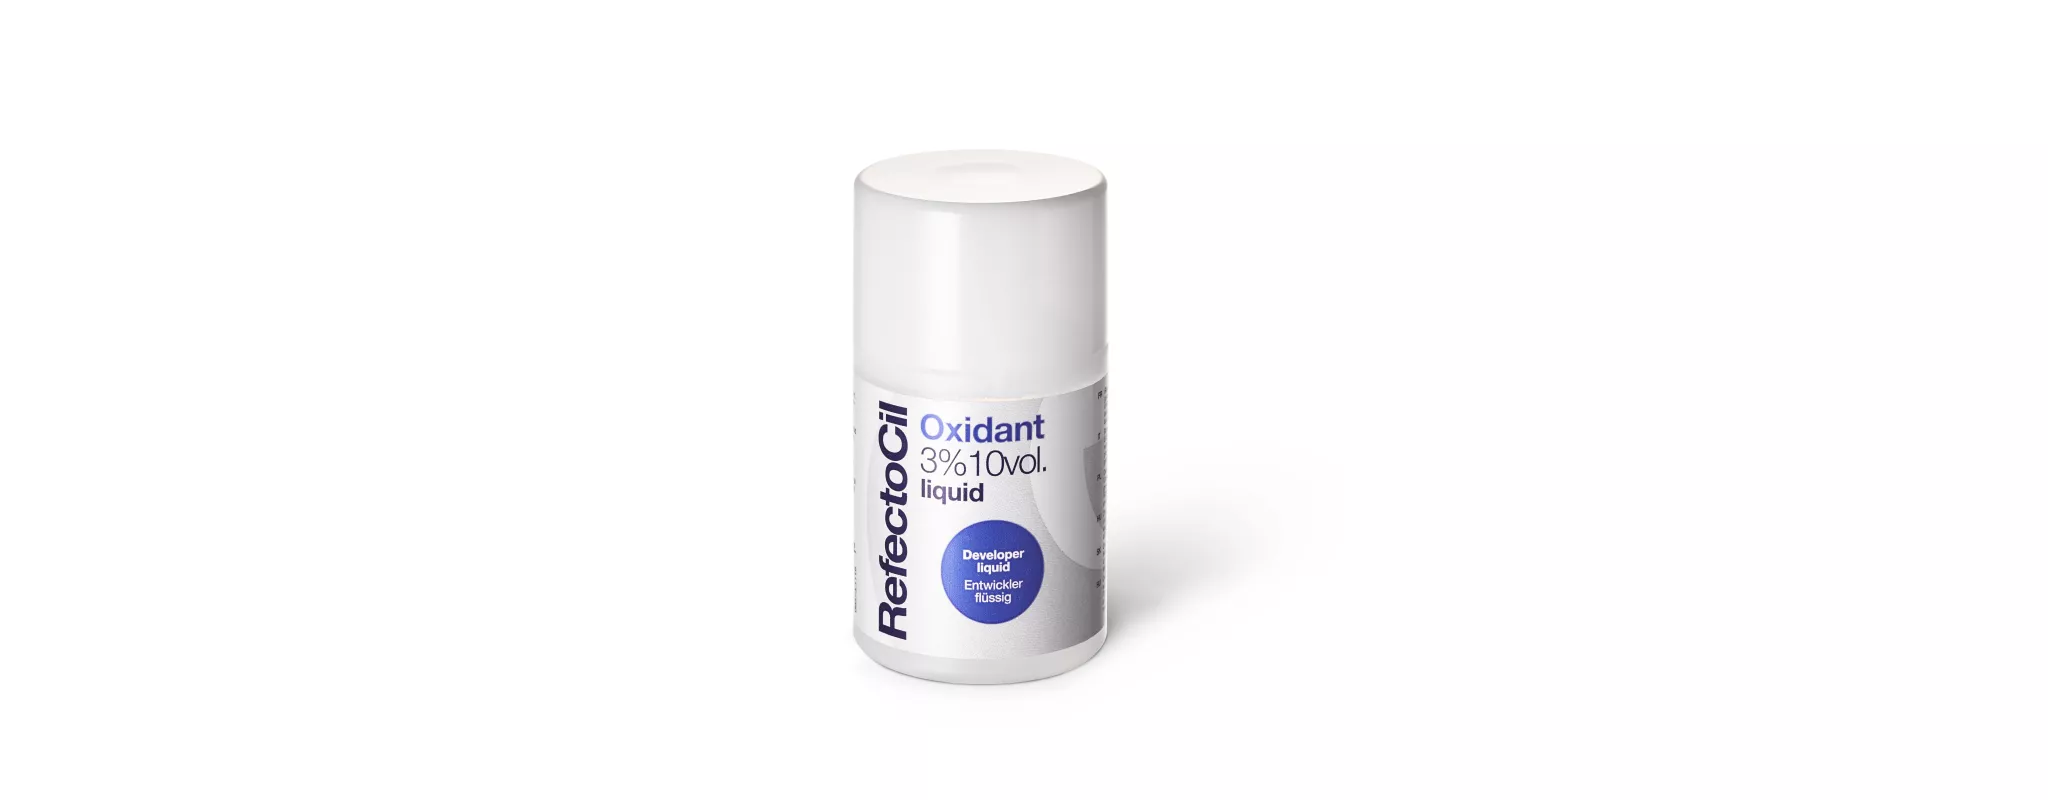 RefectoCil Oxidant 3% Developer Liquid Liquid developer, 100 ml.